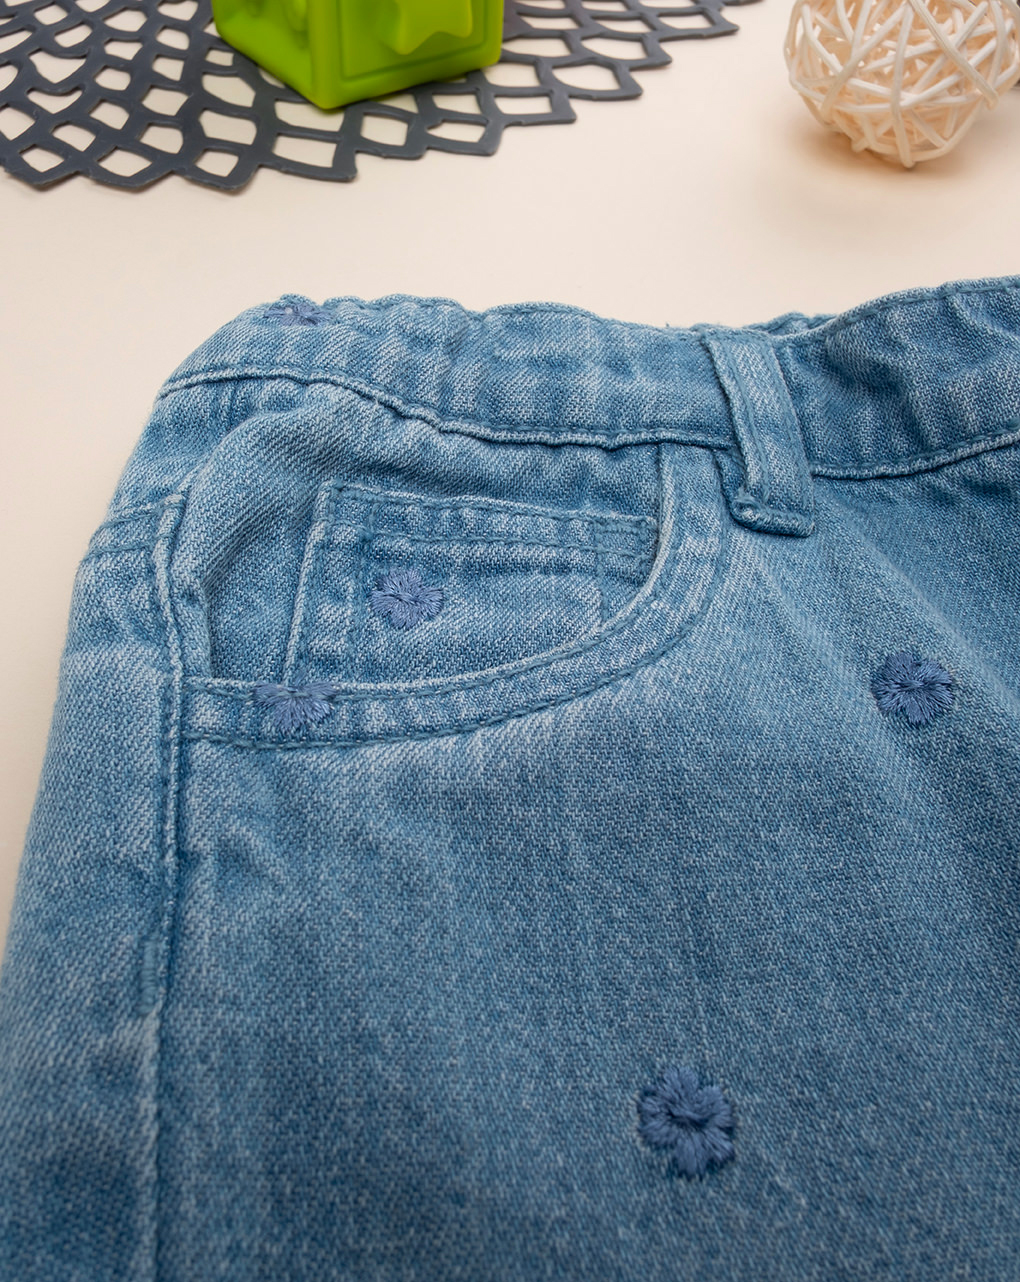 παιδικό τζιν παντελόνι μπλε με λουλούδια για κορίτσι - Prénatal